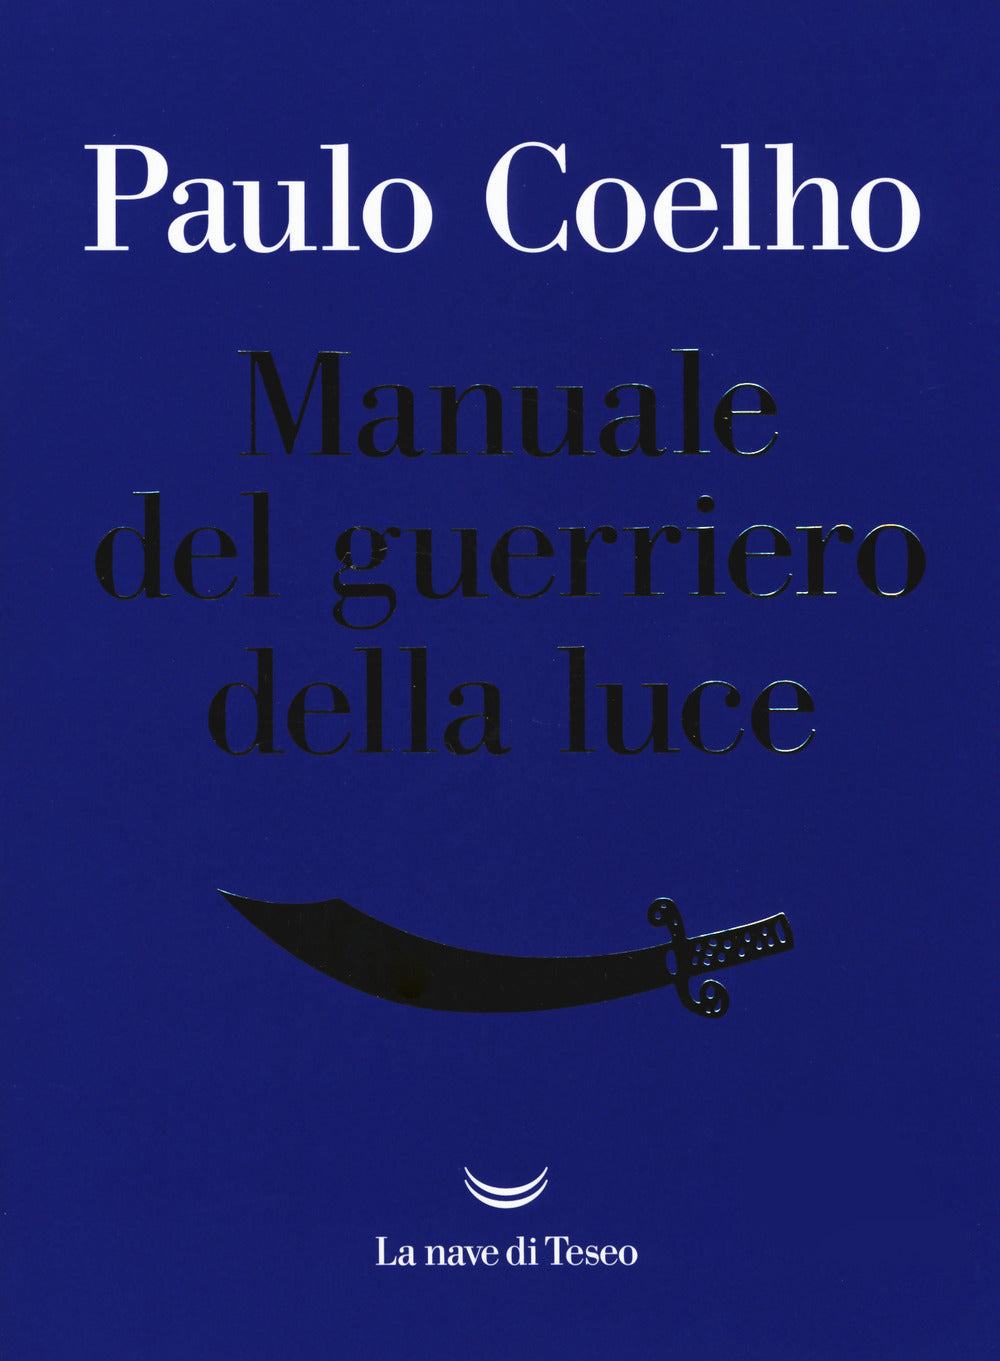 Manuale del guerriero della luce.: libro di Paulo Coelho